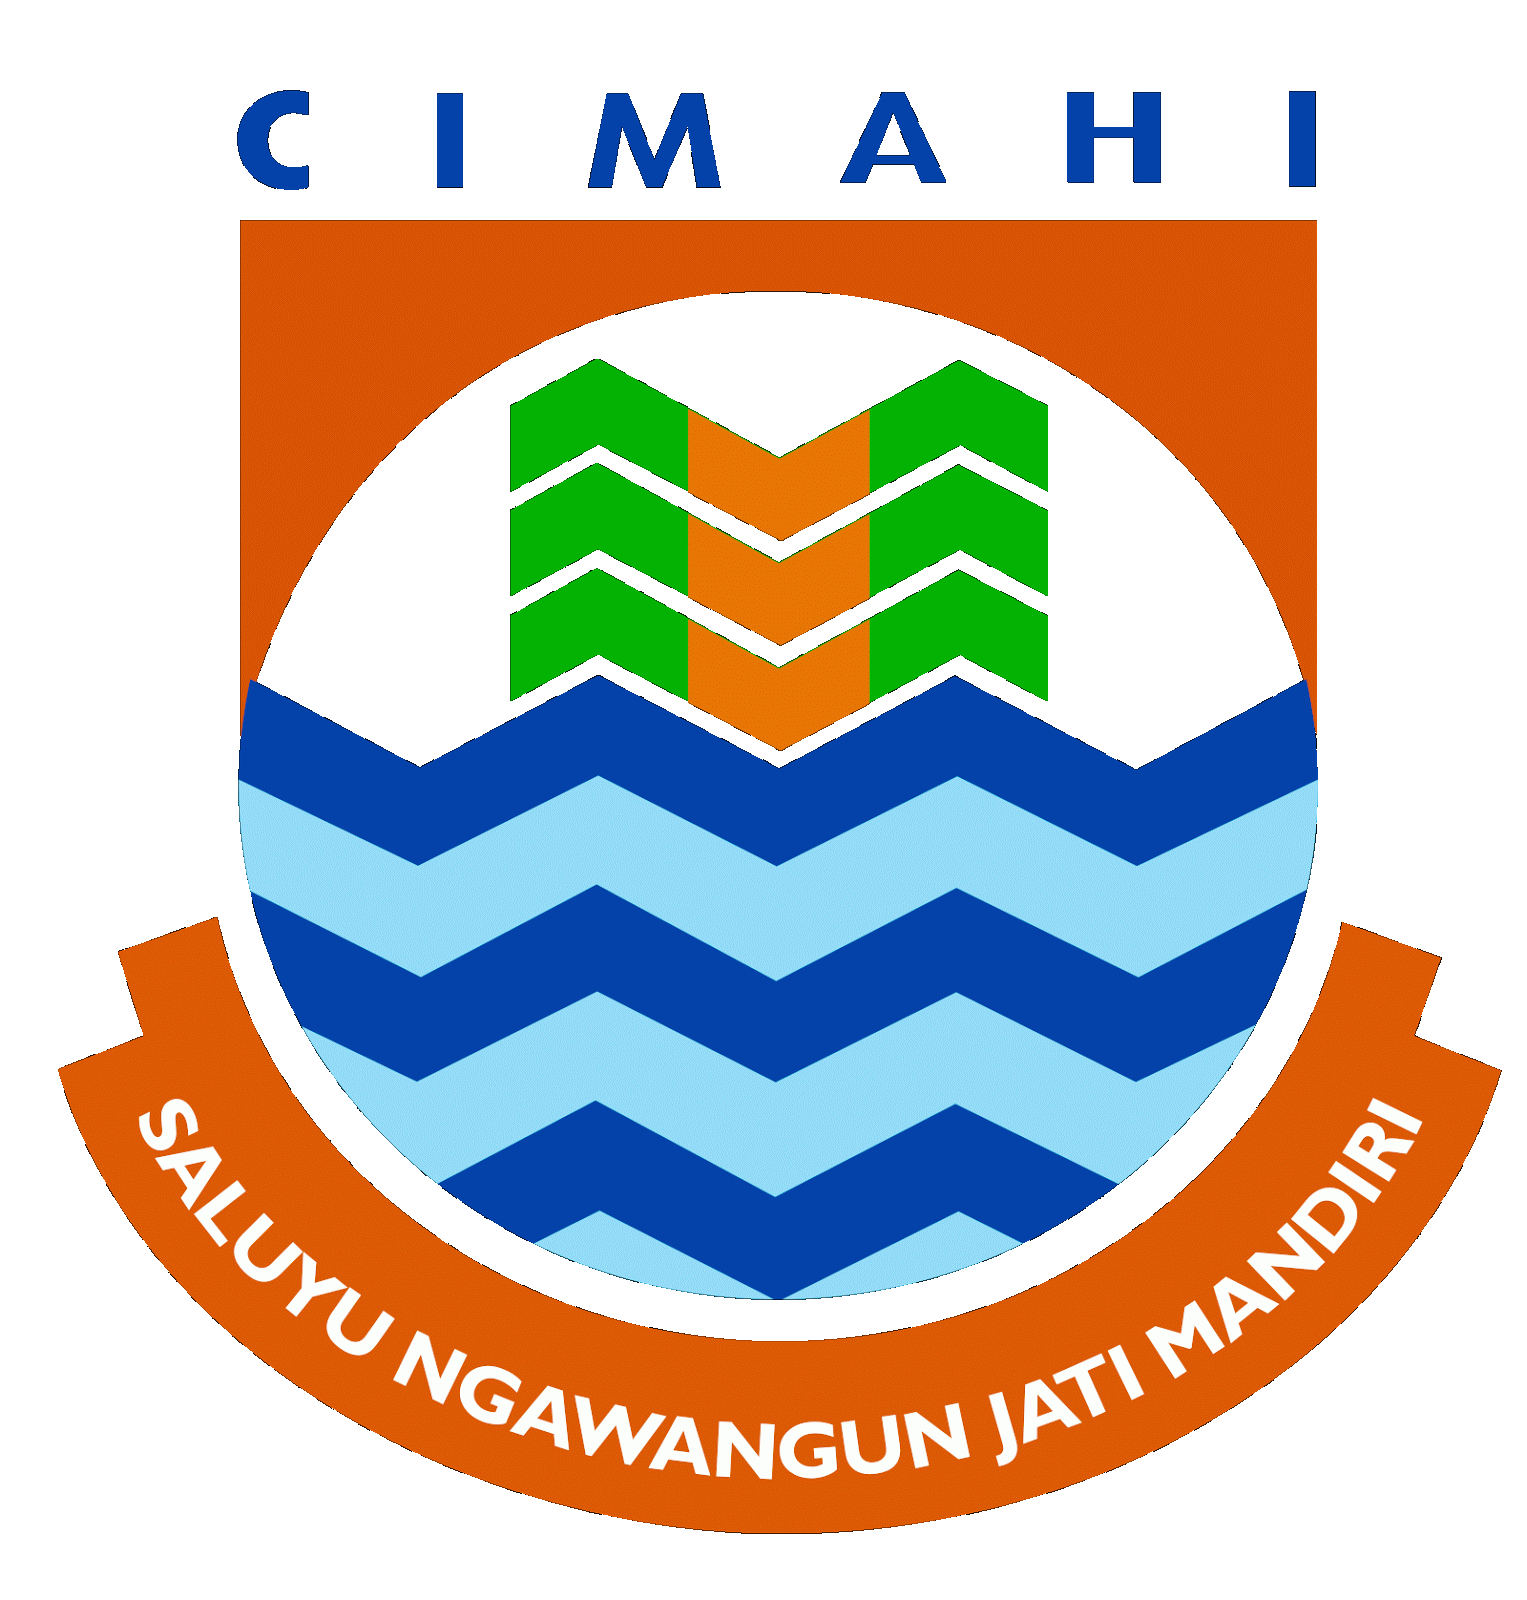 Fanti Cimahi Q Academy 2016 Indosiar - CimahiCyberCity.com